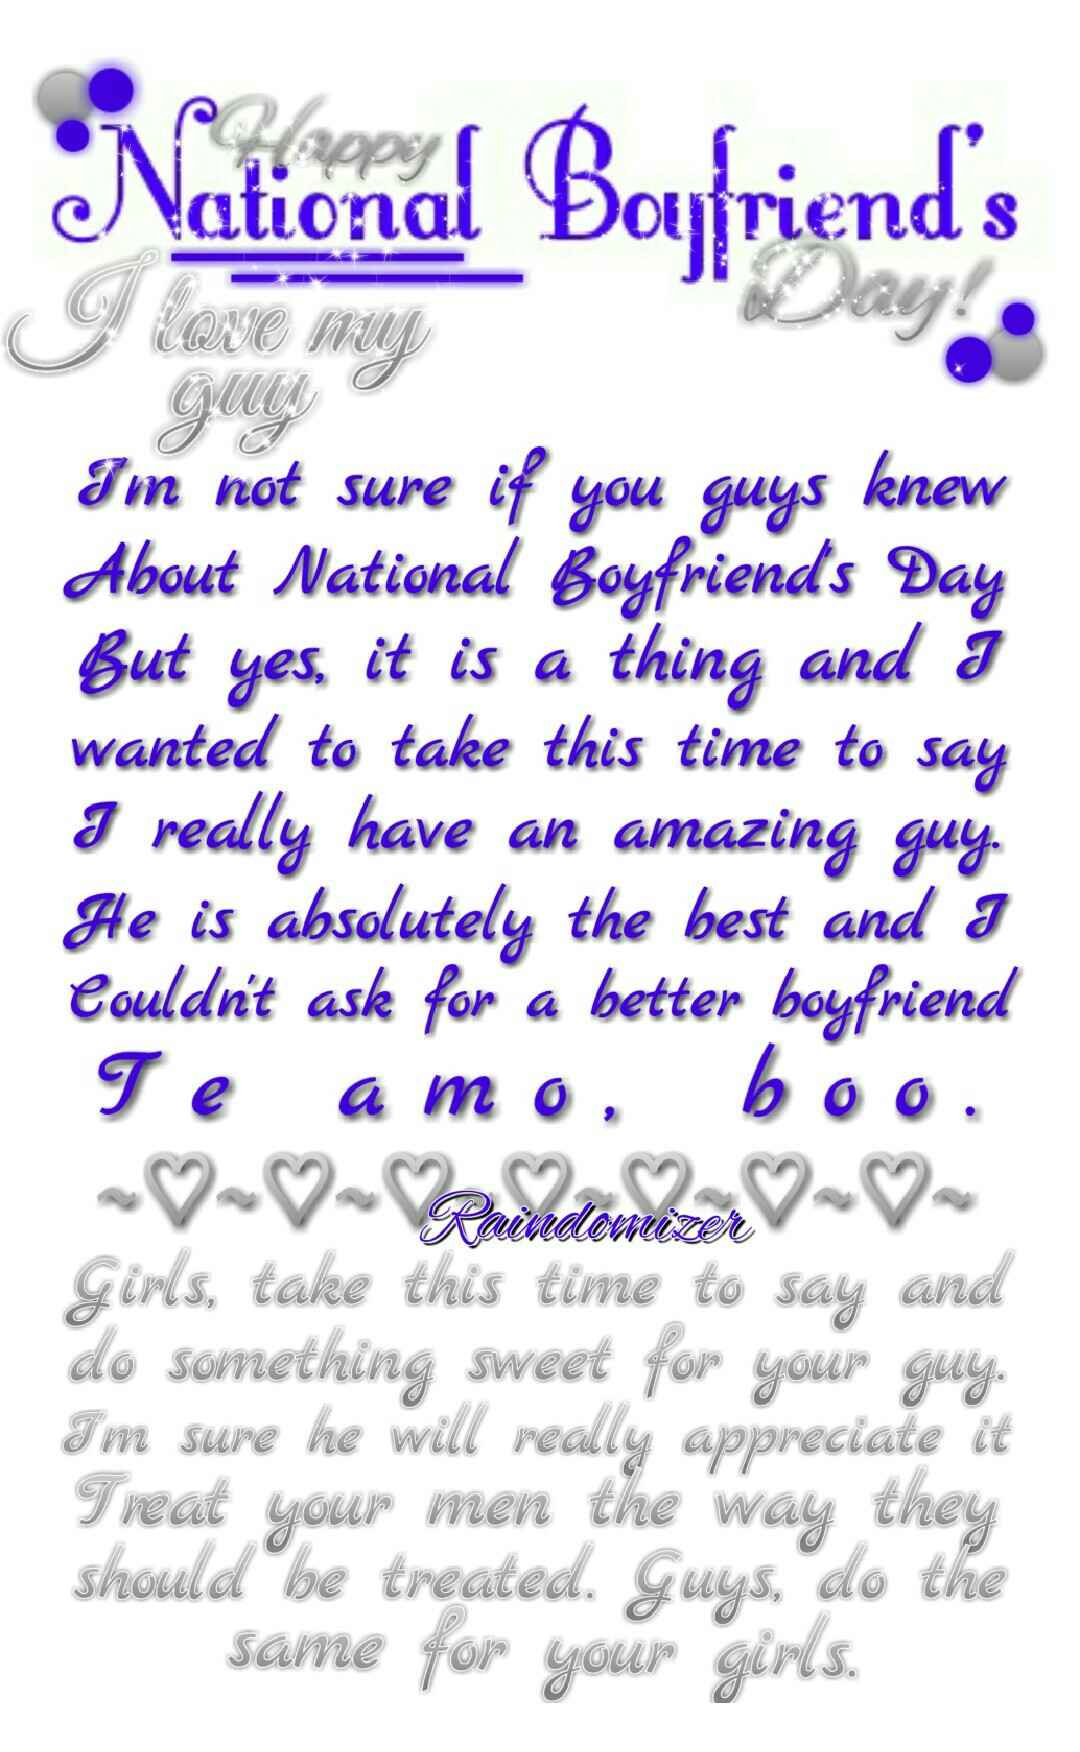 Happy National Boyfriend's Day, mi amor. Te amo. 😘💕💗💙💜